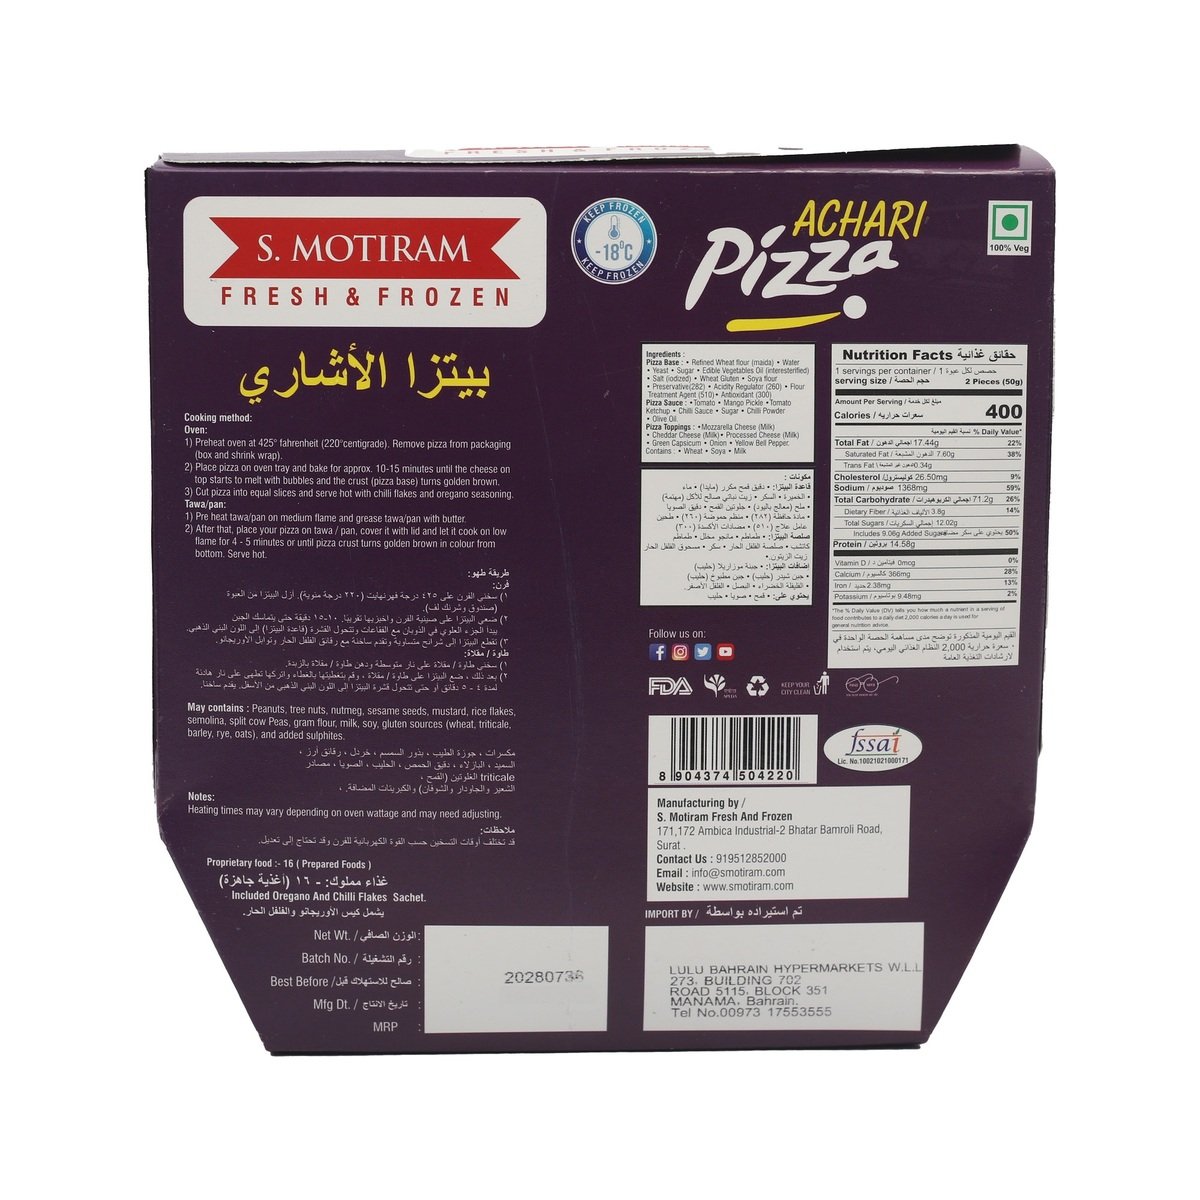 S. Motiram 7" Achari Pizza 200 g